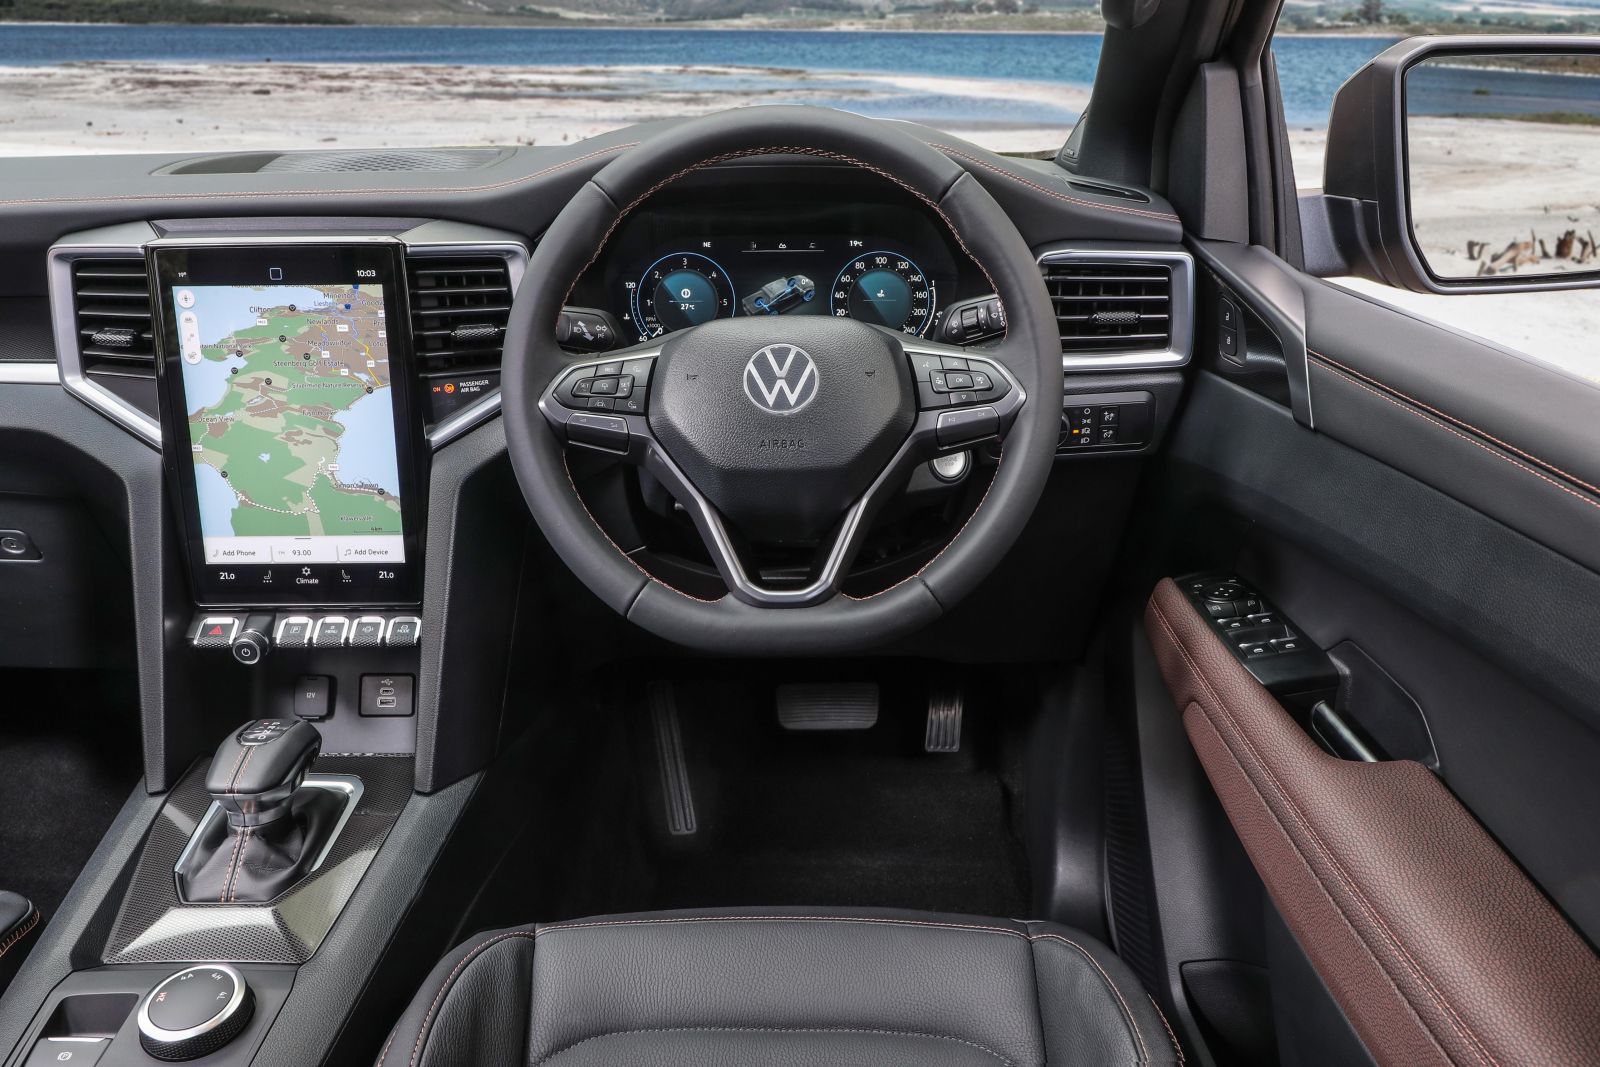 2023 Volkswagen Amarok engines Petrol and diesel options coming